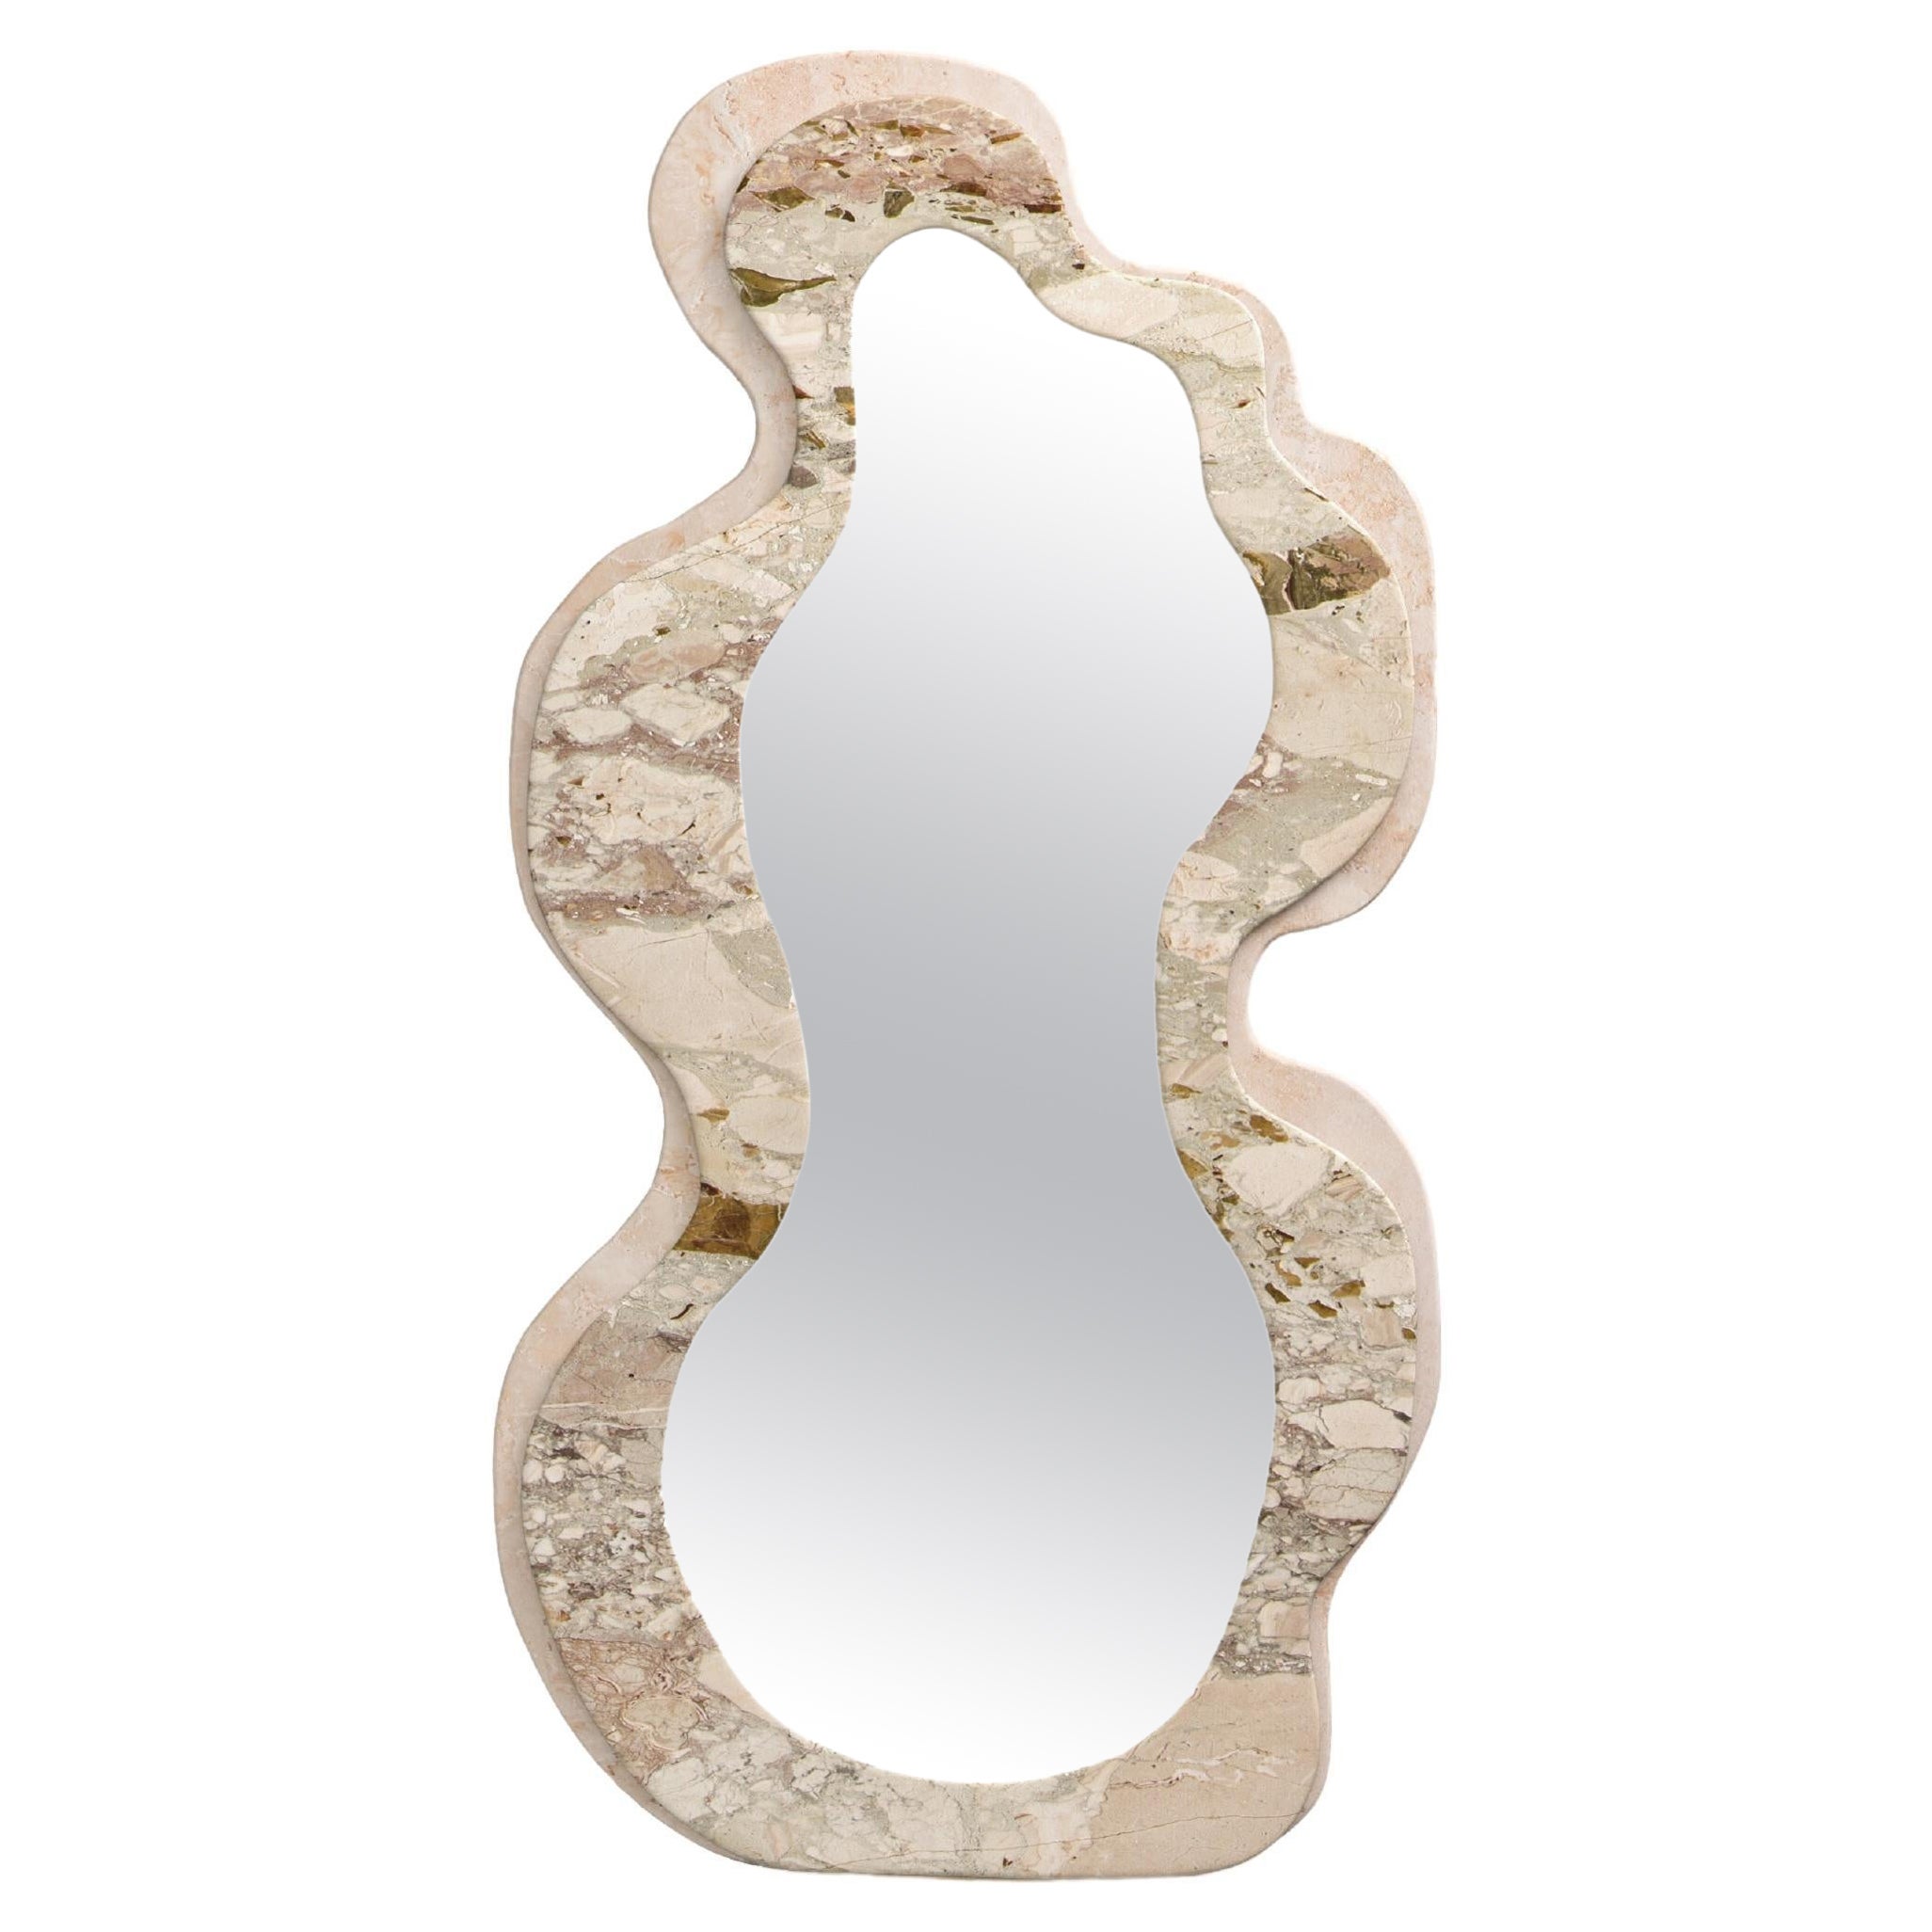 FORM(LA) Onda Floor Mirror 78”H x 42”W x 1.5”D Breccia Rosa & Travertino Navona For Sale